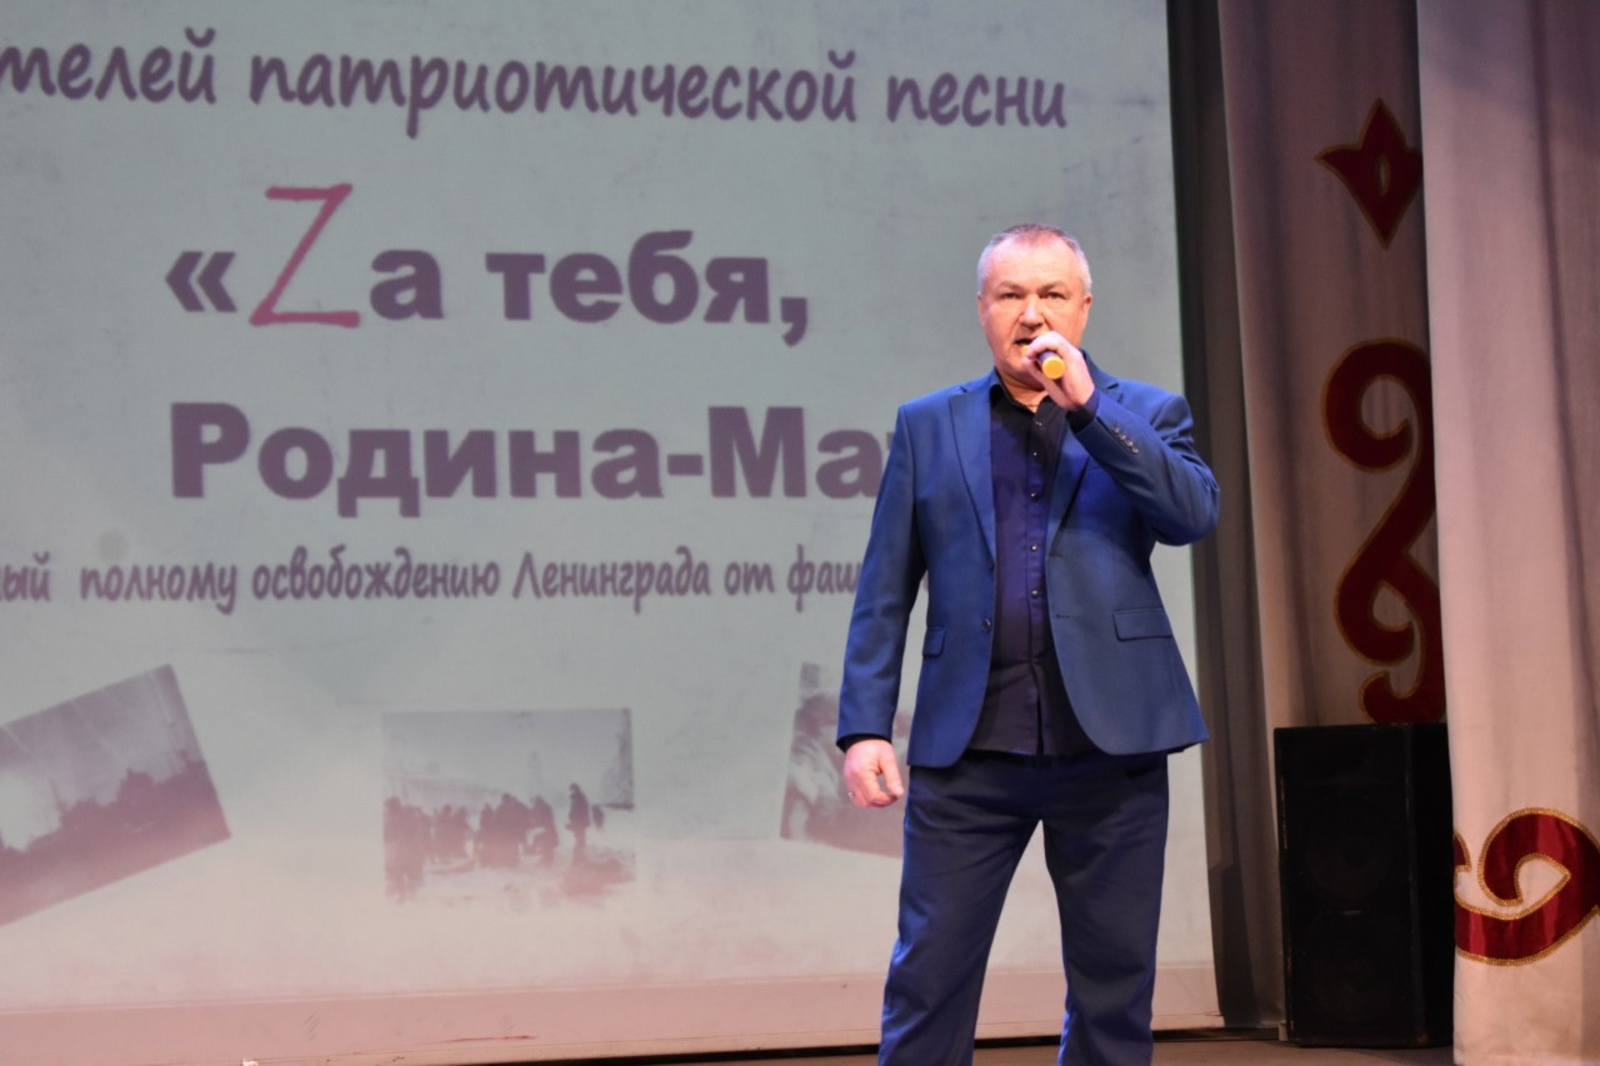 В Мечетлинском районе состоялся Открытый конкурс «Zа тебя, Родина – Мать!»